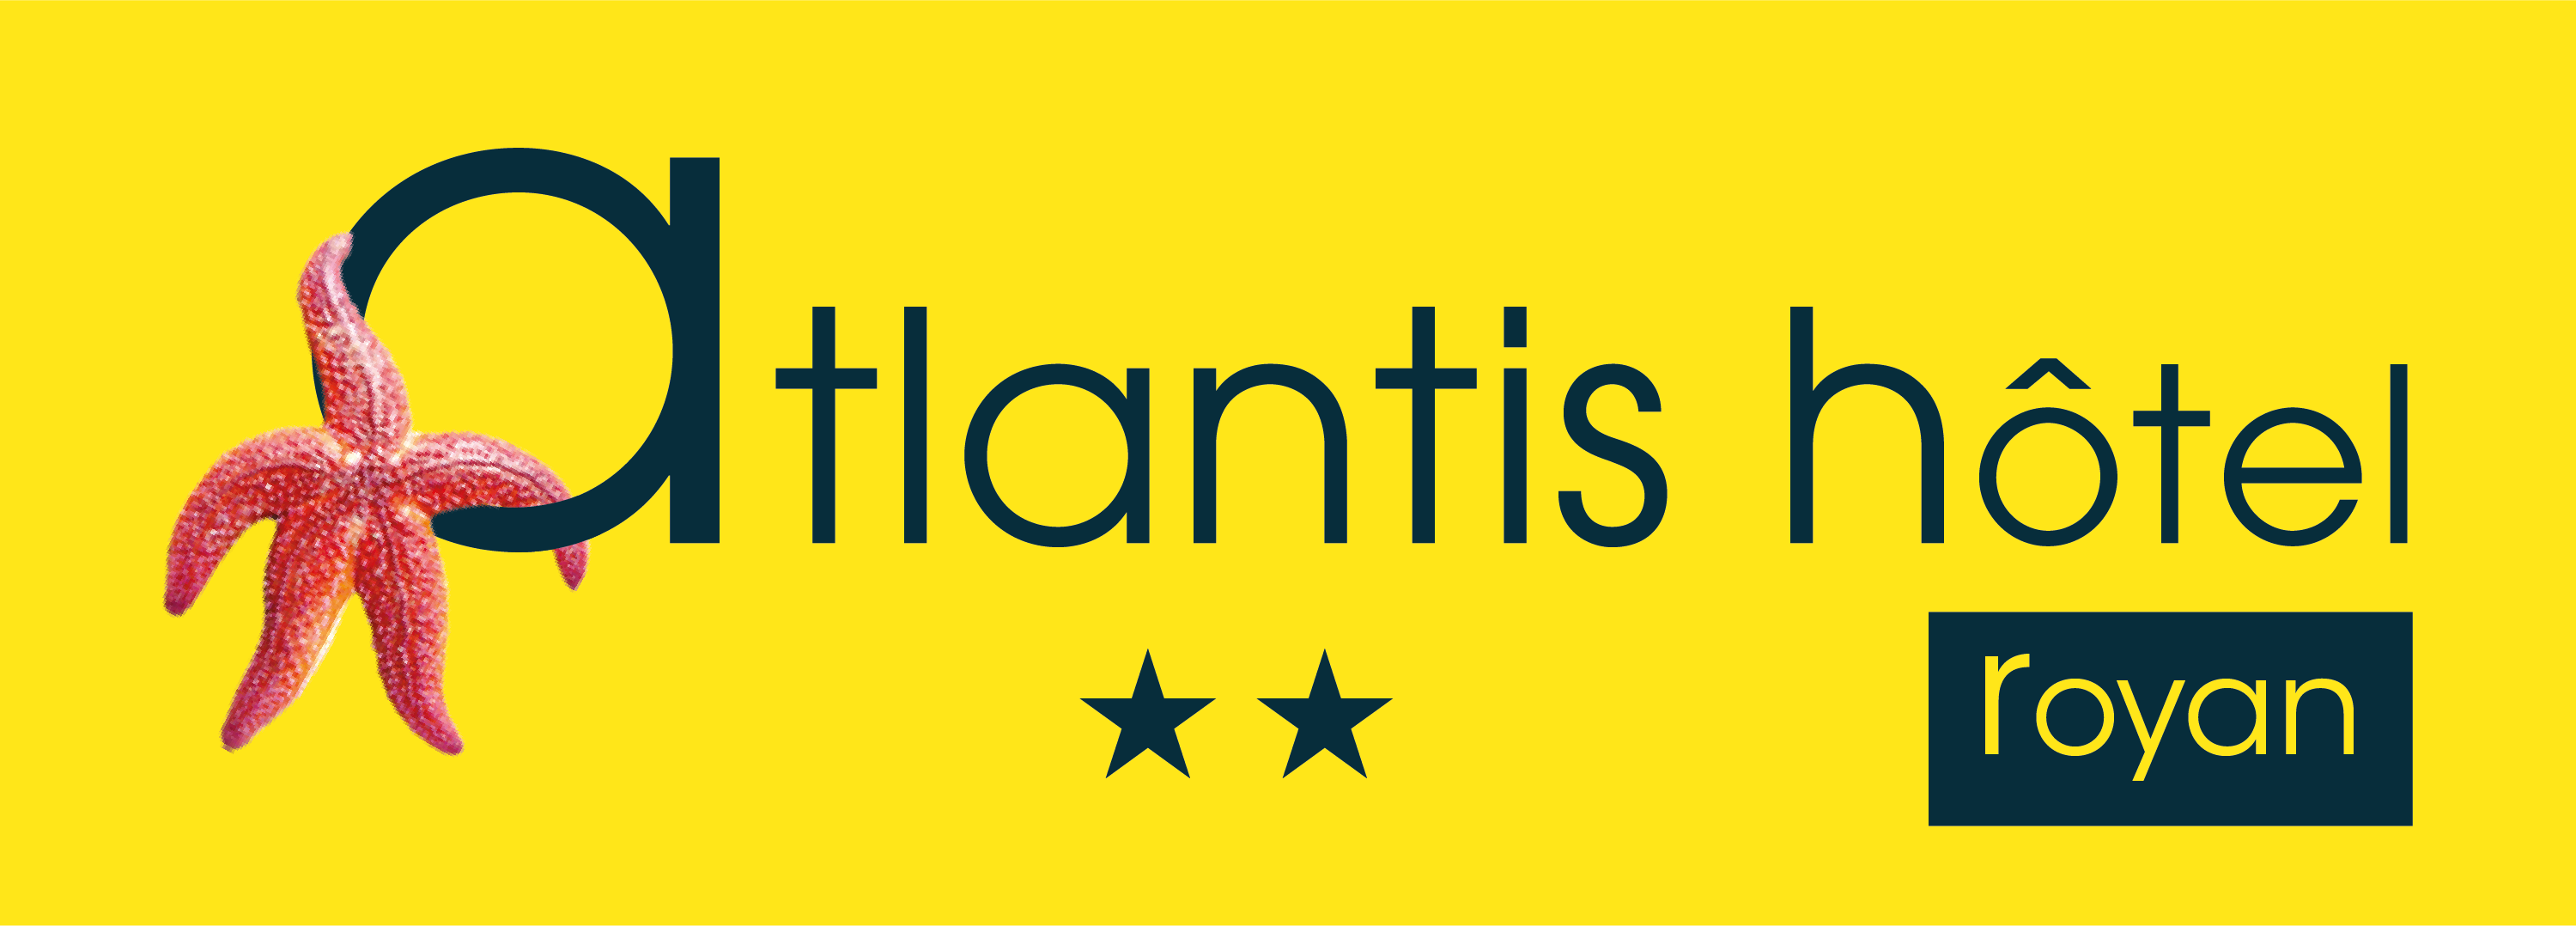 Hôtel Atlantis - Hôtel 2 étoiles à Royan